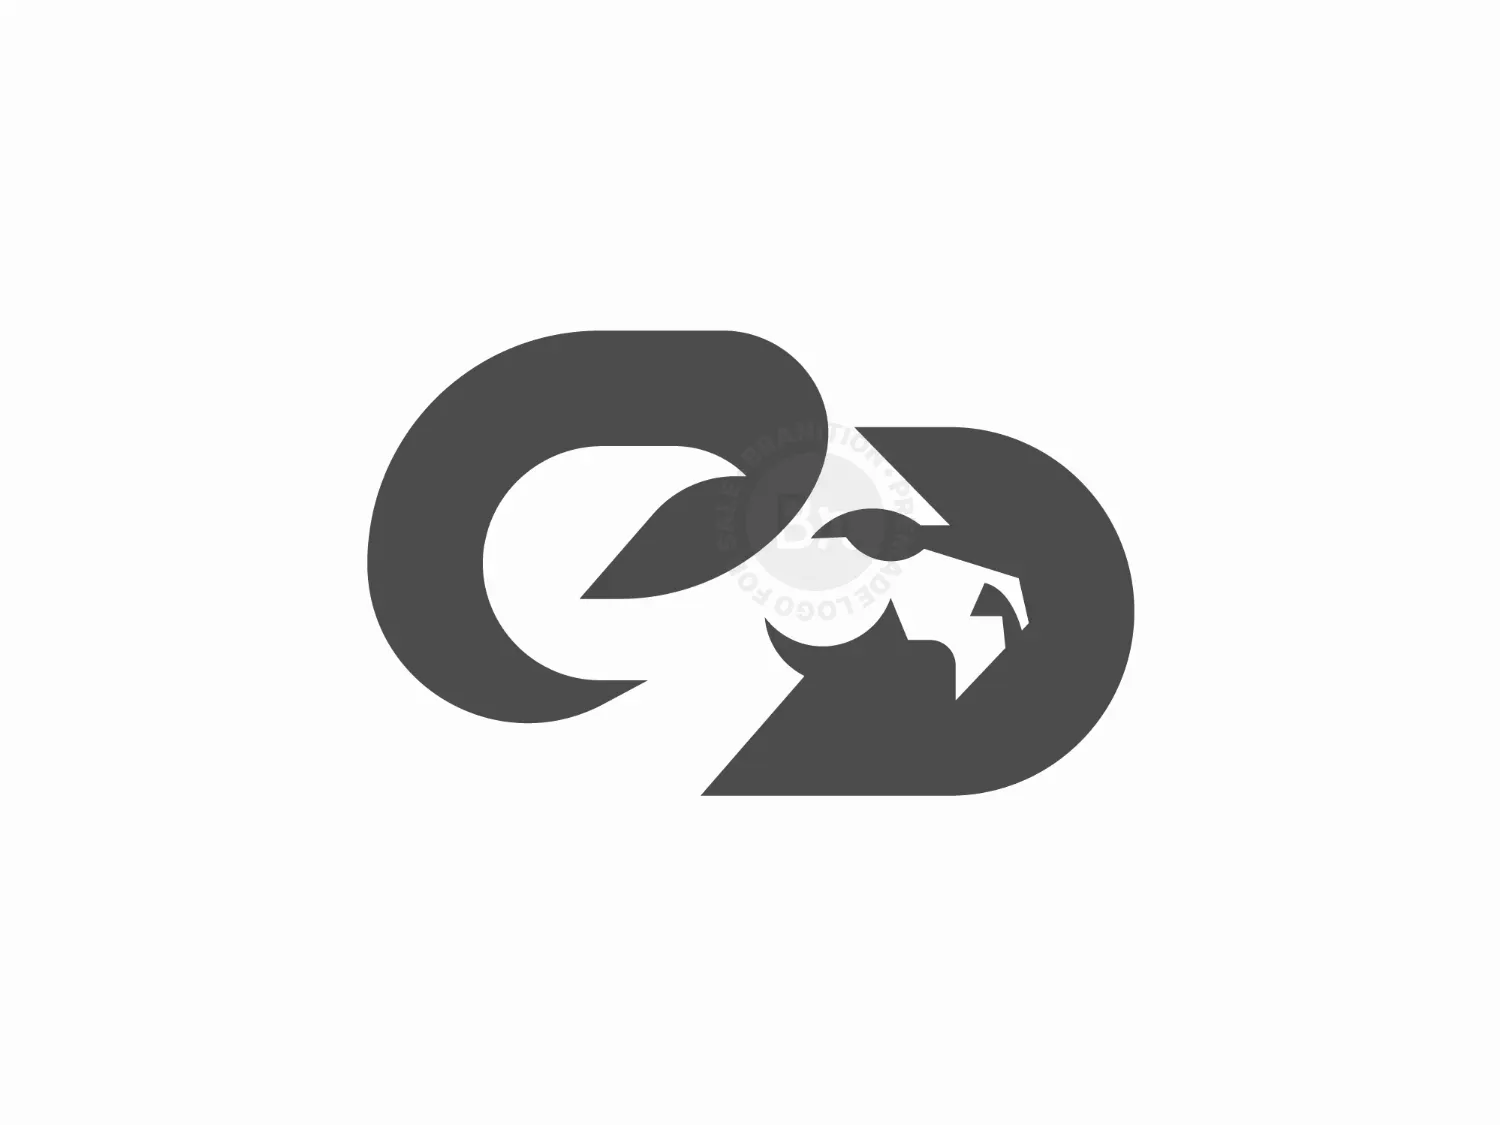 C Or CD Ram Logo